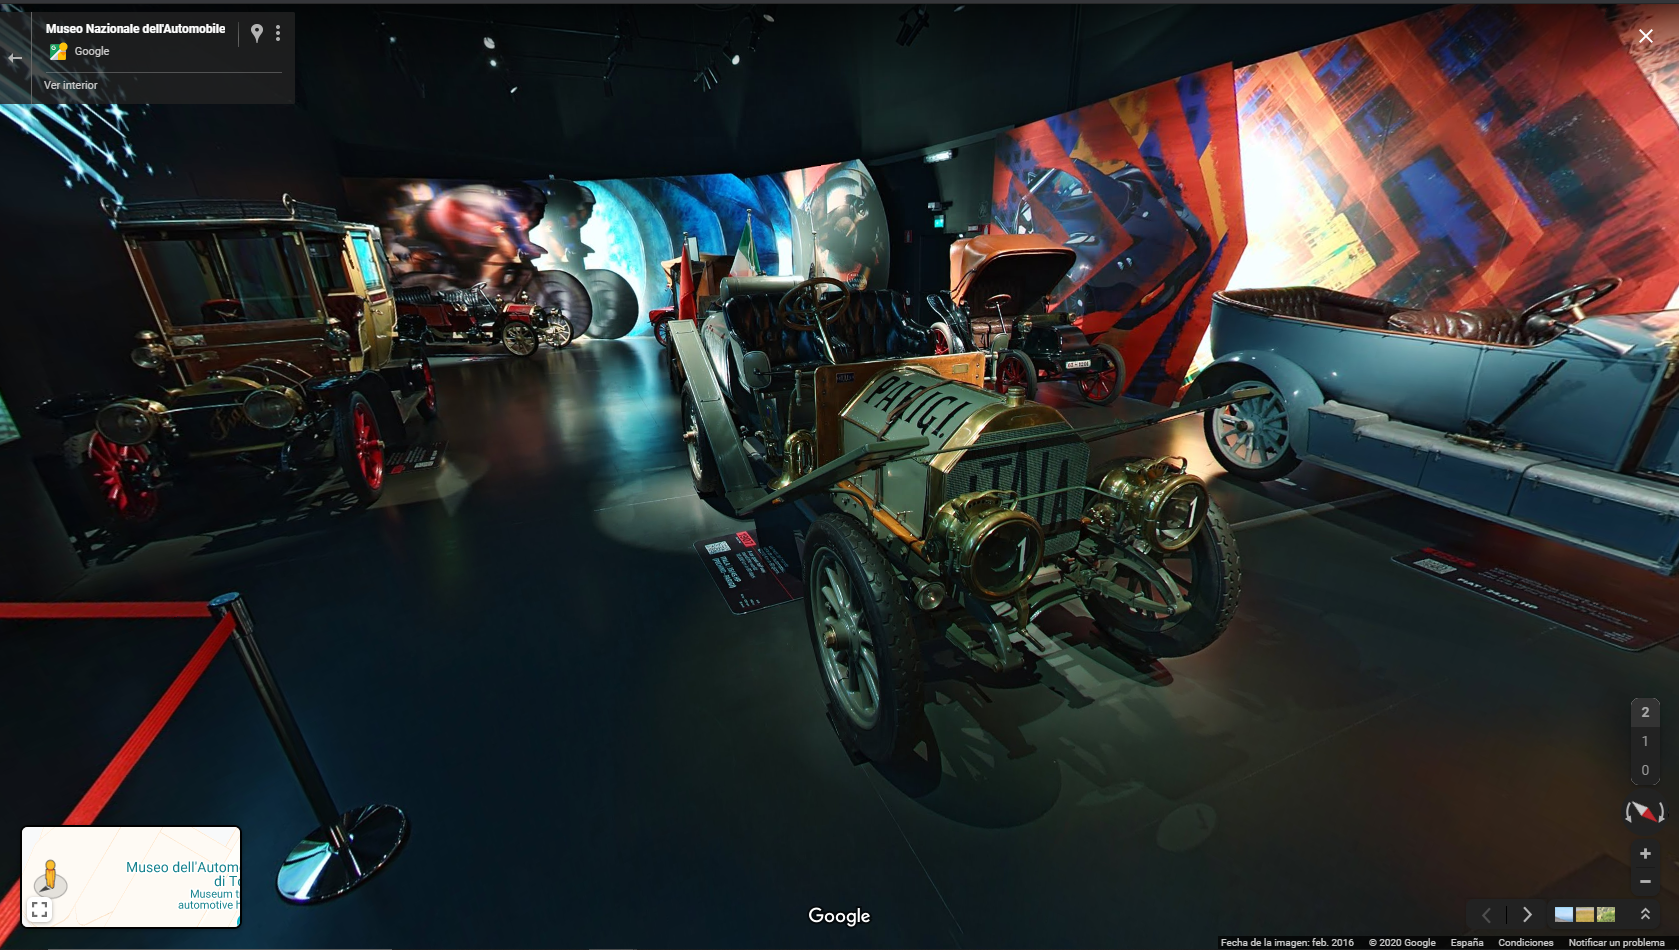 Hoy visitamos virtualmente el Museo Nazionale dell’Automobile Torino